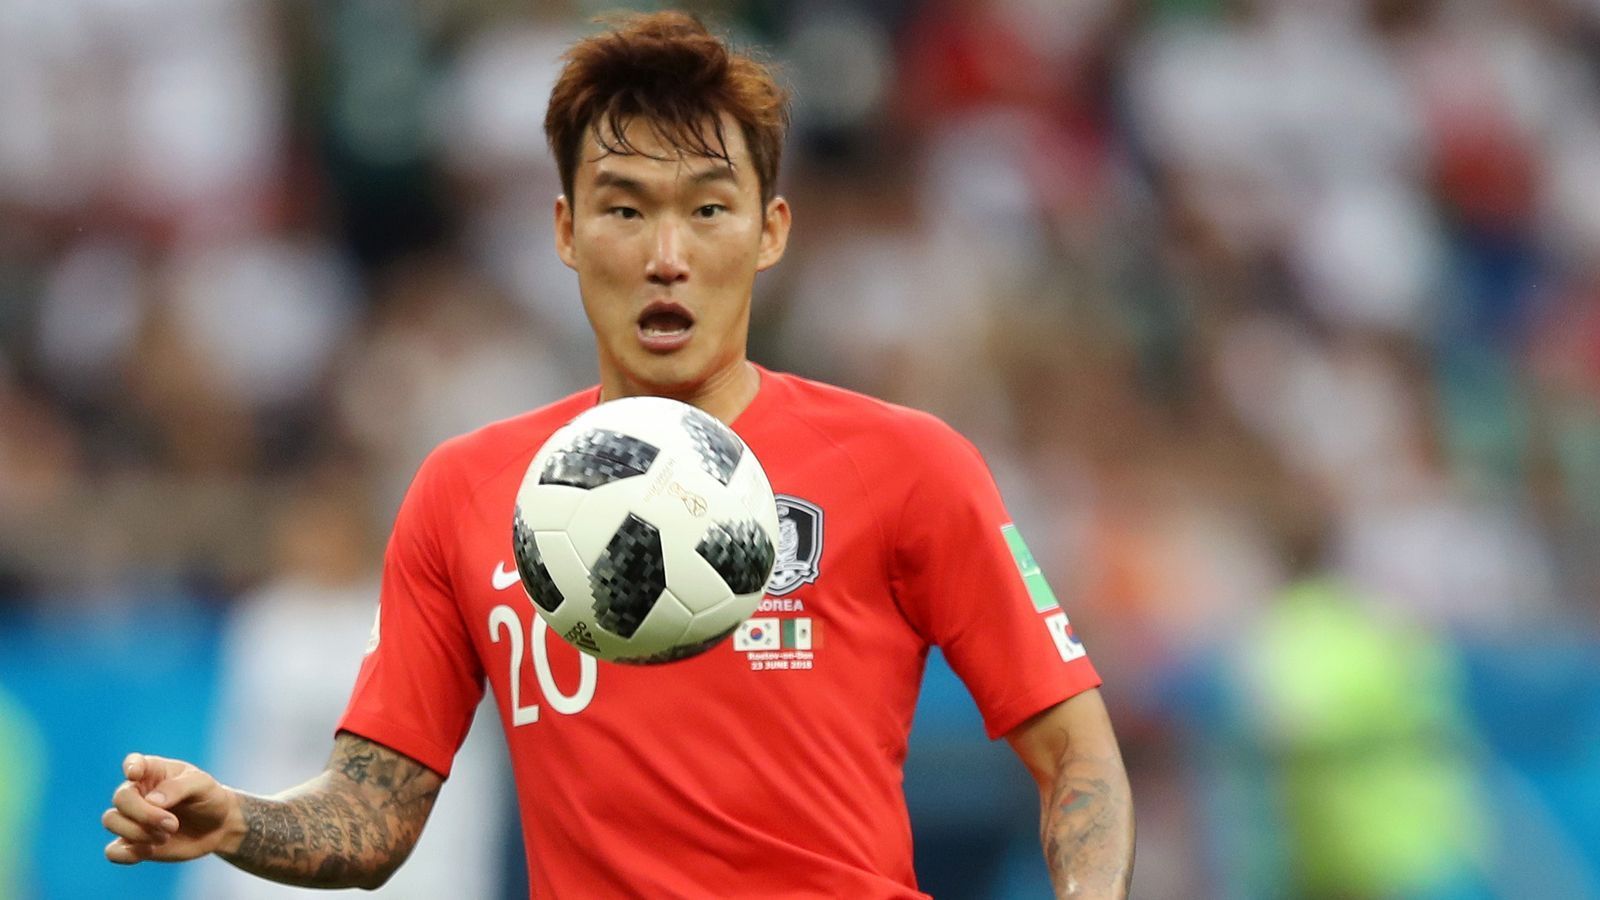 
                <strong>Hyun-Soo Jang</strong><br>
                Sollte die deutsche Nationalmannschaft gegen die meist kleinen Südkoreaner auf hohe Bälle setzen, wäre Hyun-soo Jang der Mann, der diese Chancen vereiteln müsste. Mit einer Körpergröße von 1,87 Metern ist der Innenverteidiger vom FC Tokyo für einen Südkoreaner ungewöhnlich groß. Er verfügt über ein starkes Kopfballspiel und ist ein unermüdlicher Manndecker.
              